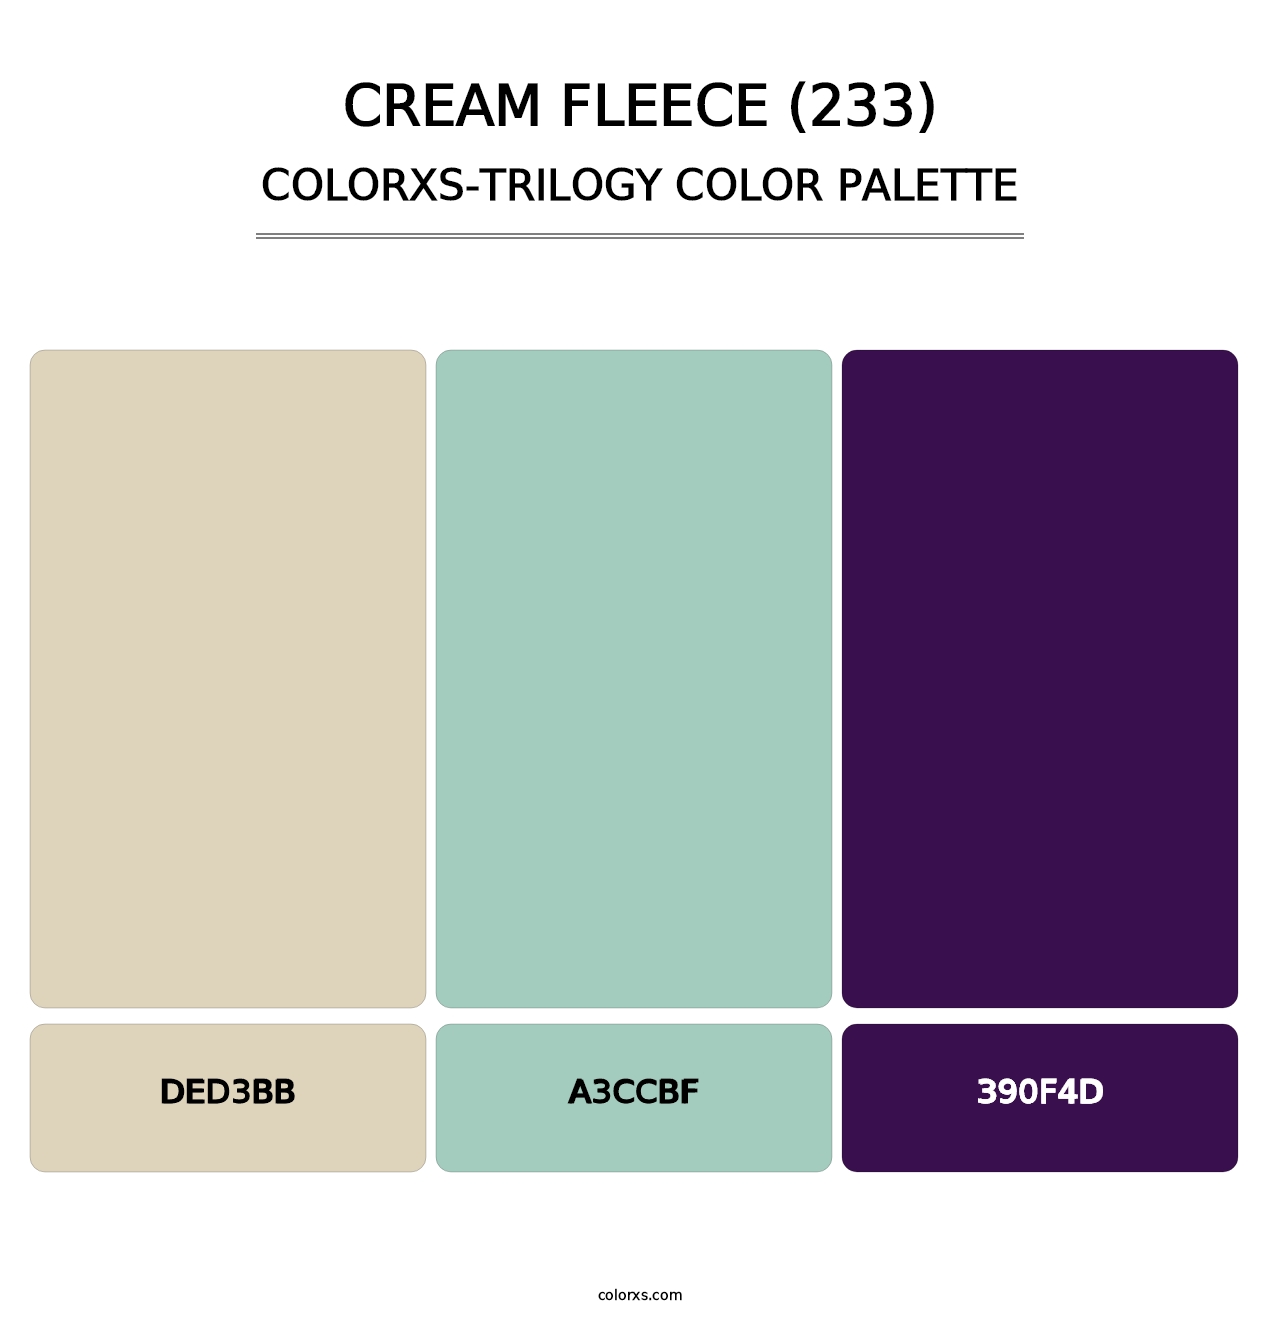 Cream Fleece (233) - Colorxs Trilogy Palette